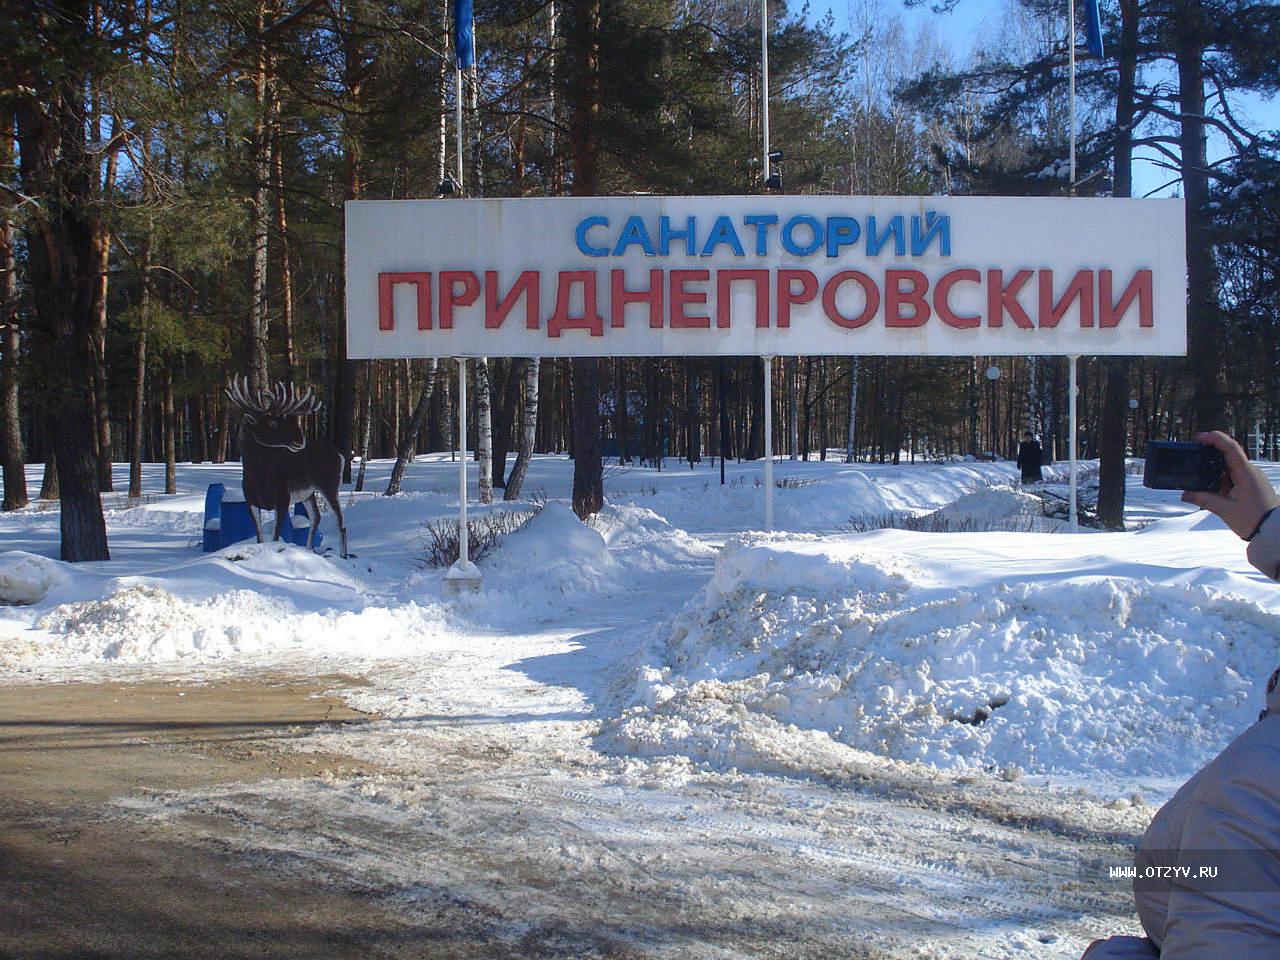 Схема санатория Приднепровский Белоруссия